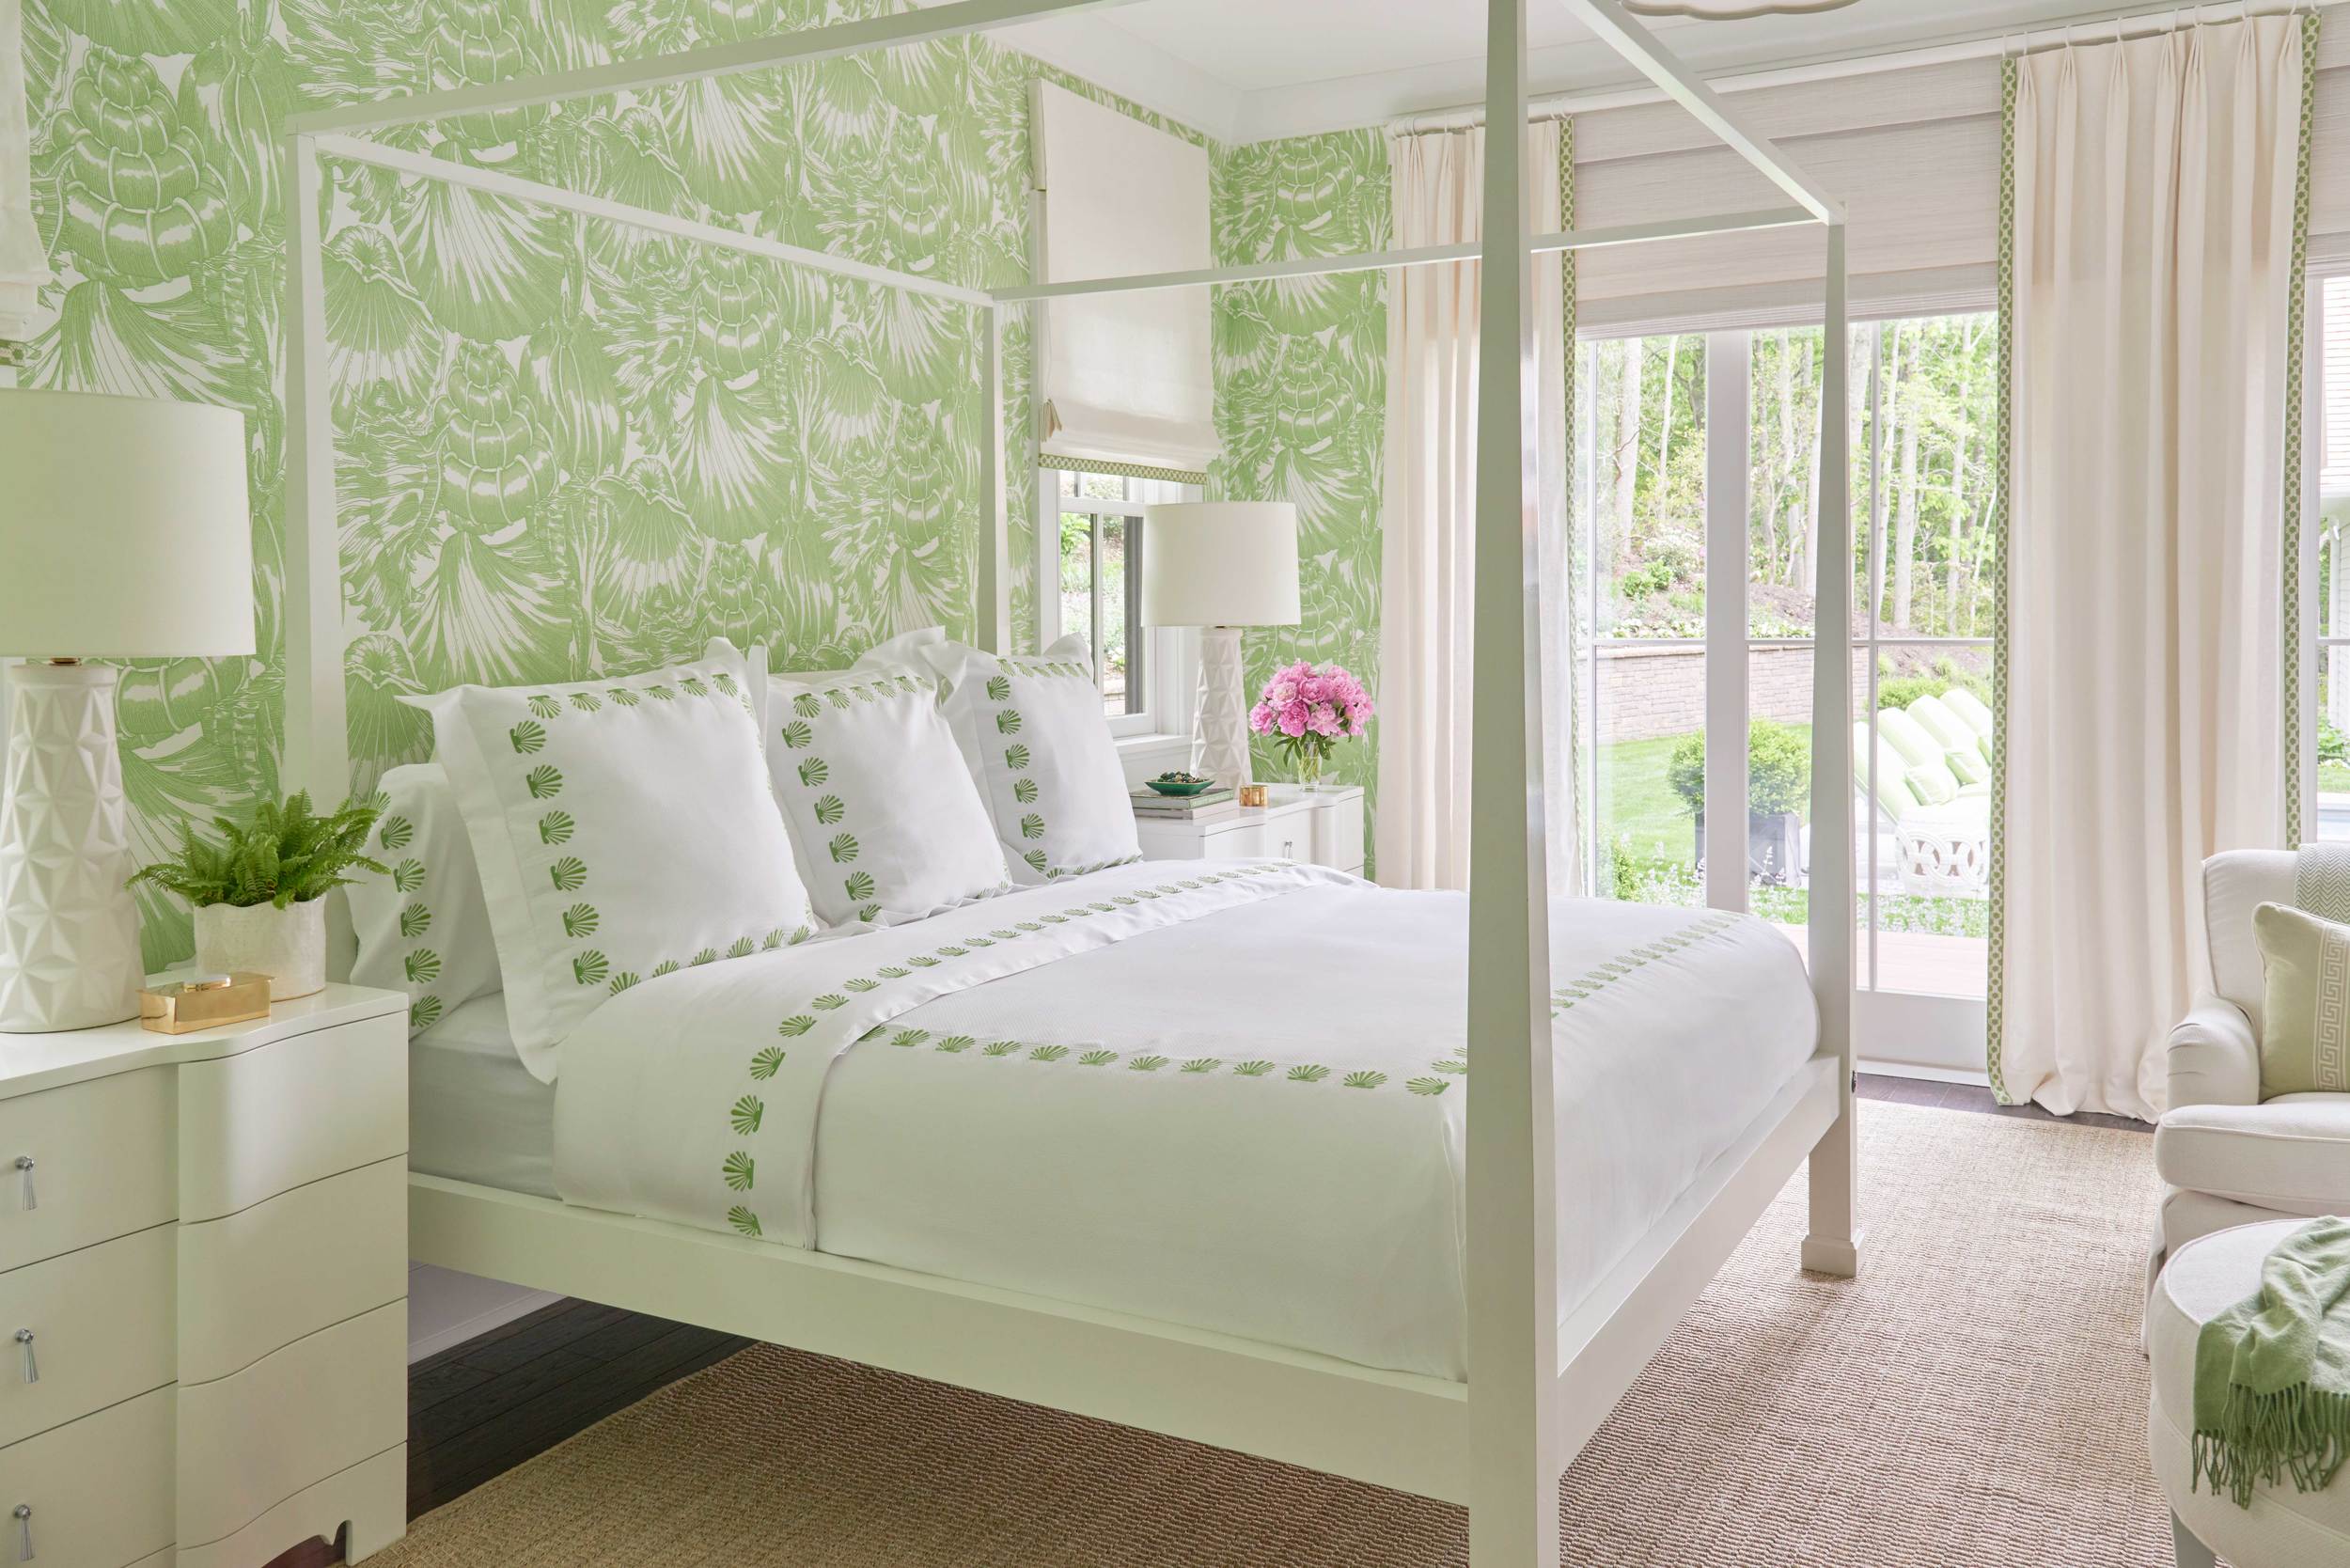 Meg-Braff---Coastal-Living-Coastal-Idea-House-Bedroom-Green-Wallpaper.jpg